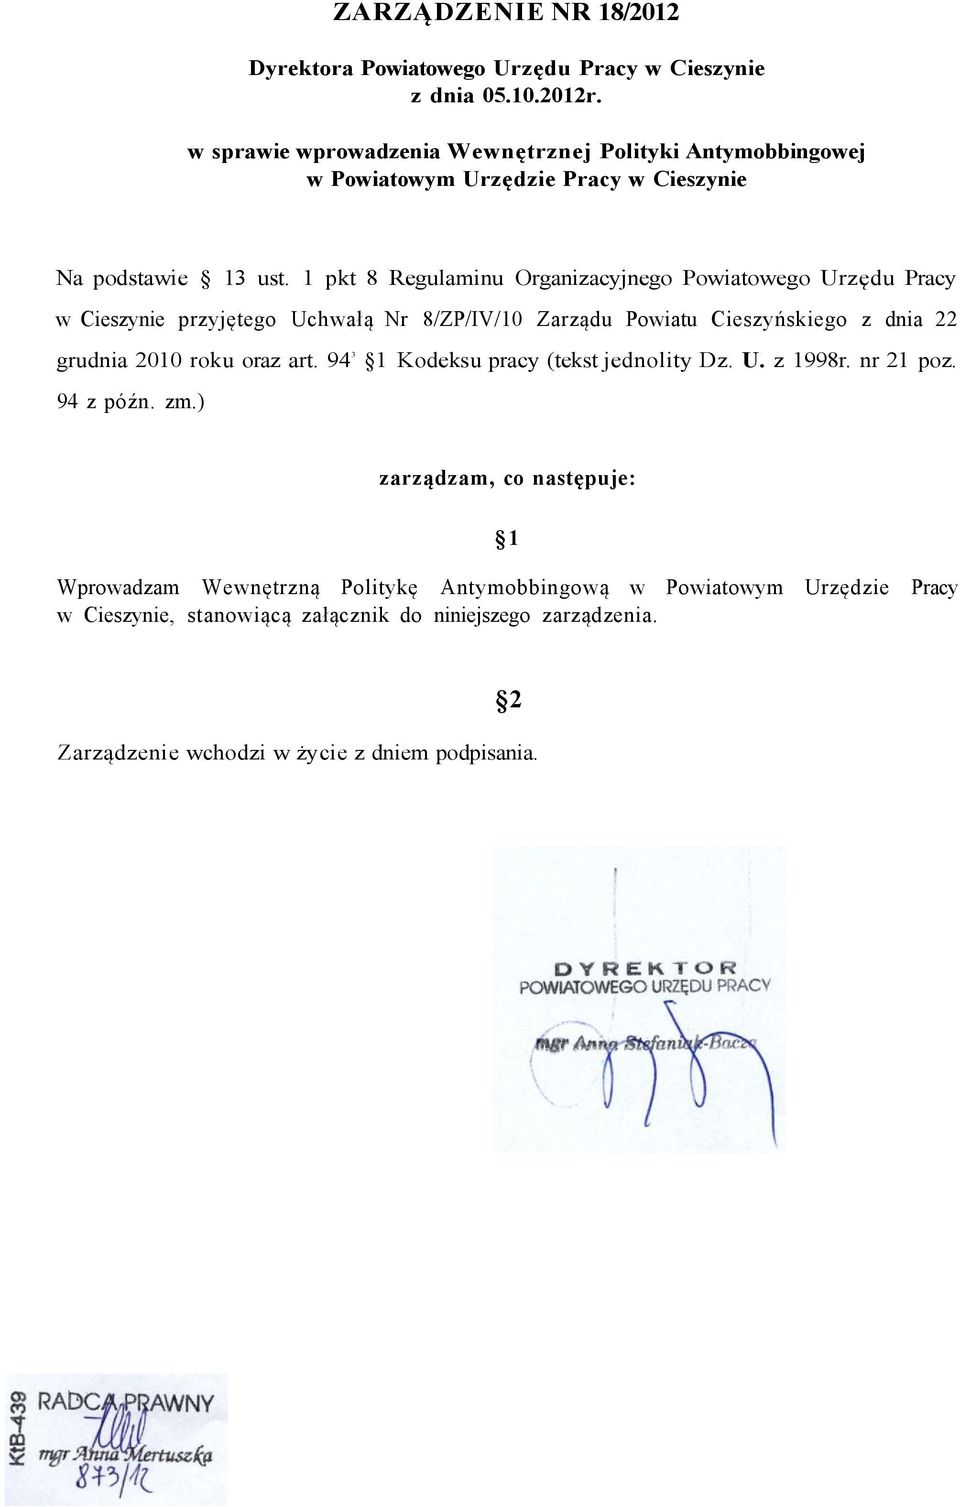 1 pkt 8 Regulaminu Organizacyjnego Powiatowego Urzędu Pracy w Cieszynie przyjętego Uchwałą Nr 8/ZP/IV/10 Zarządu Powiatu Cieszyńskiego z dnia 22 grudnia 2010 roku oraz